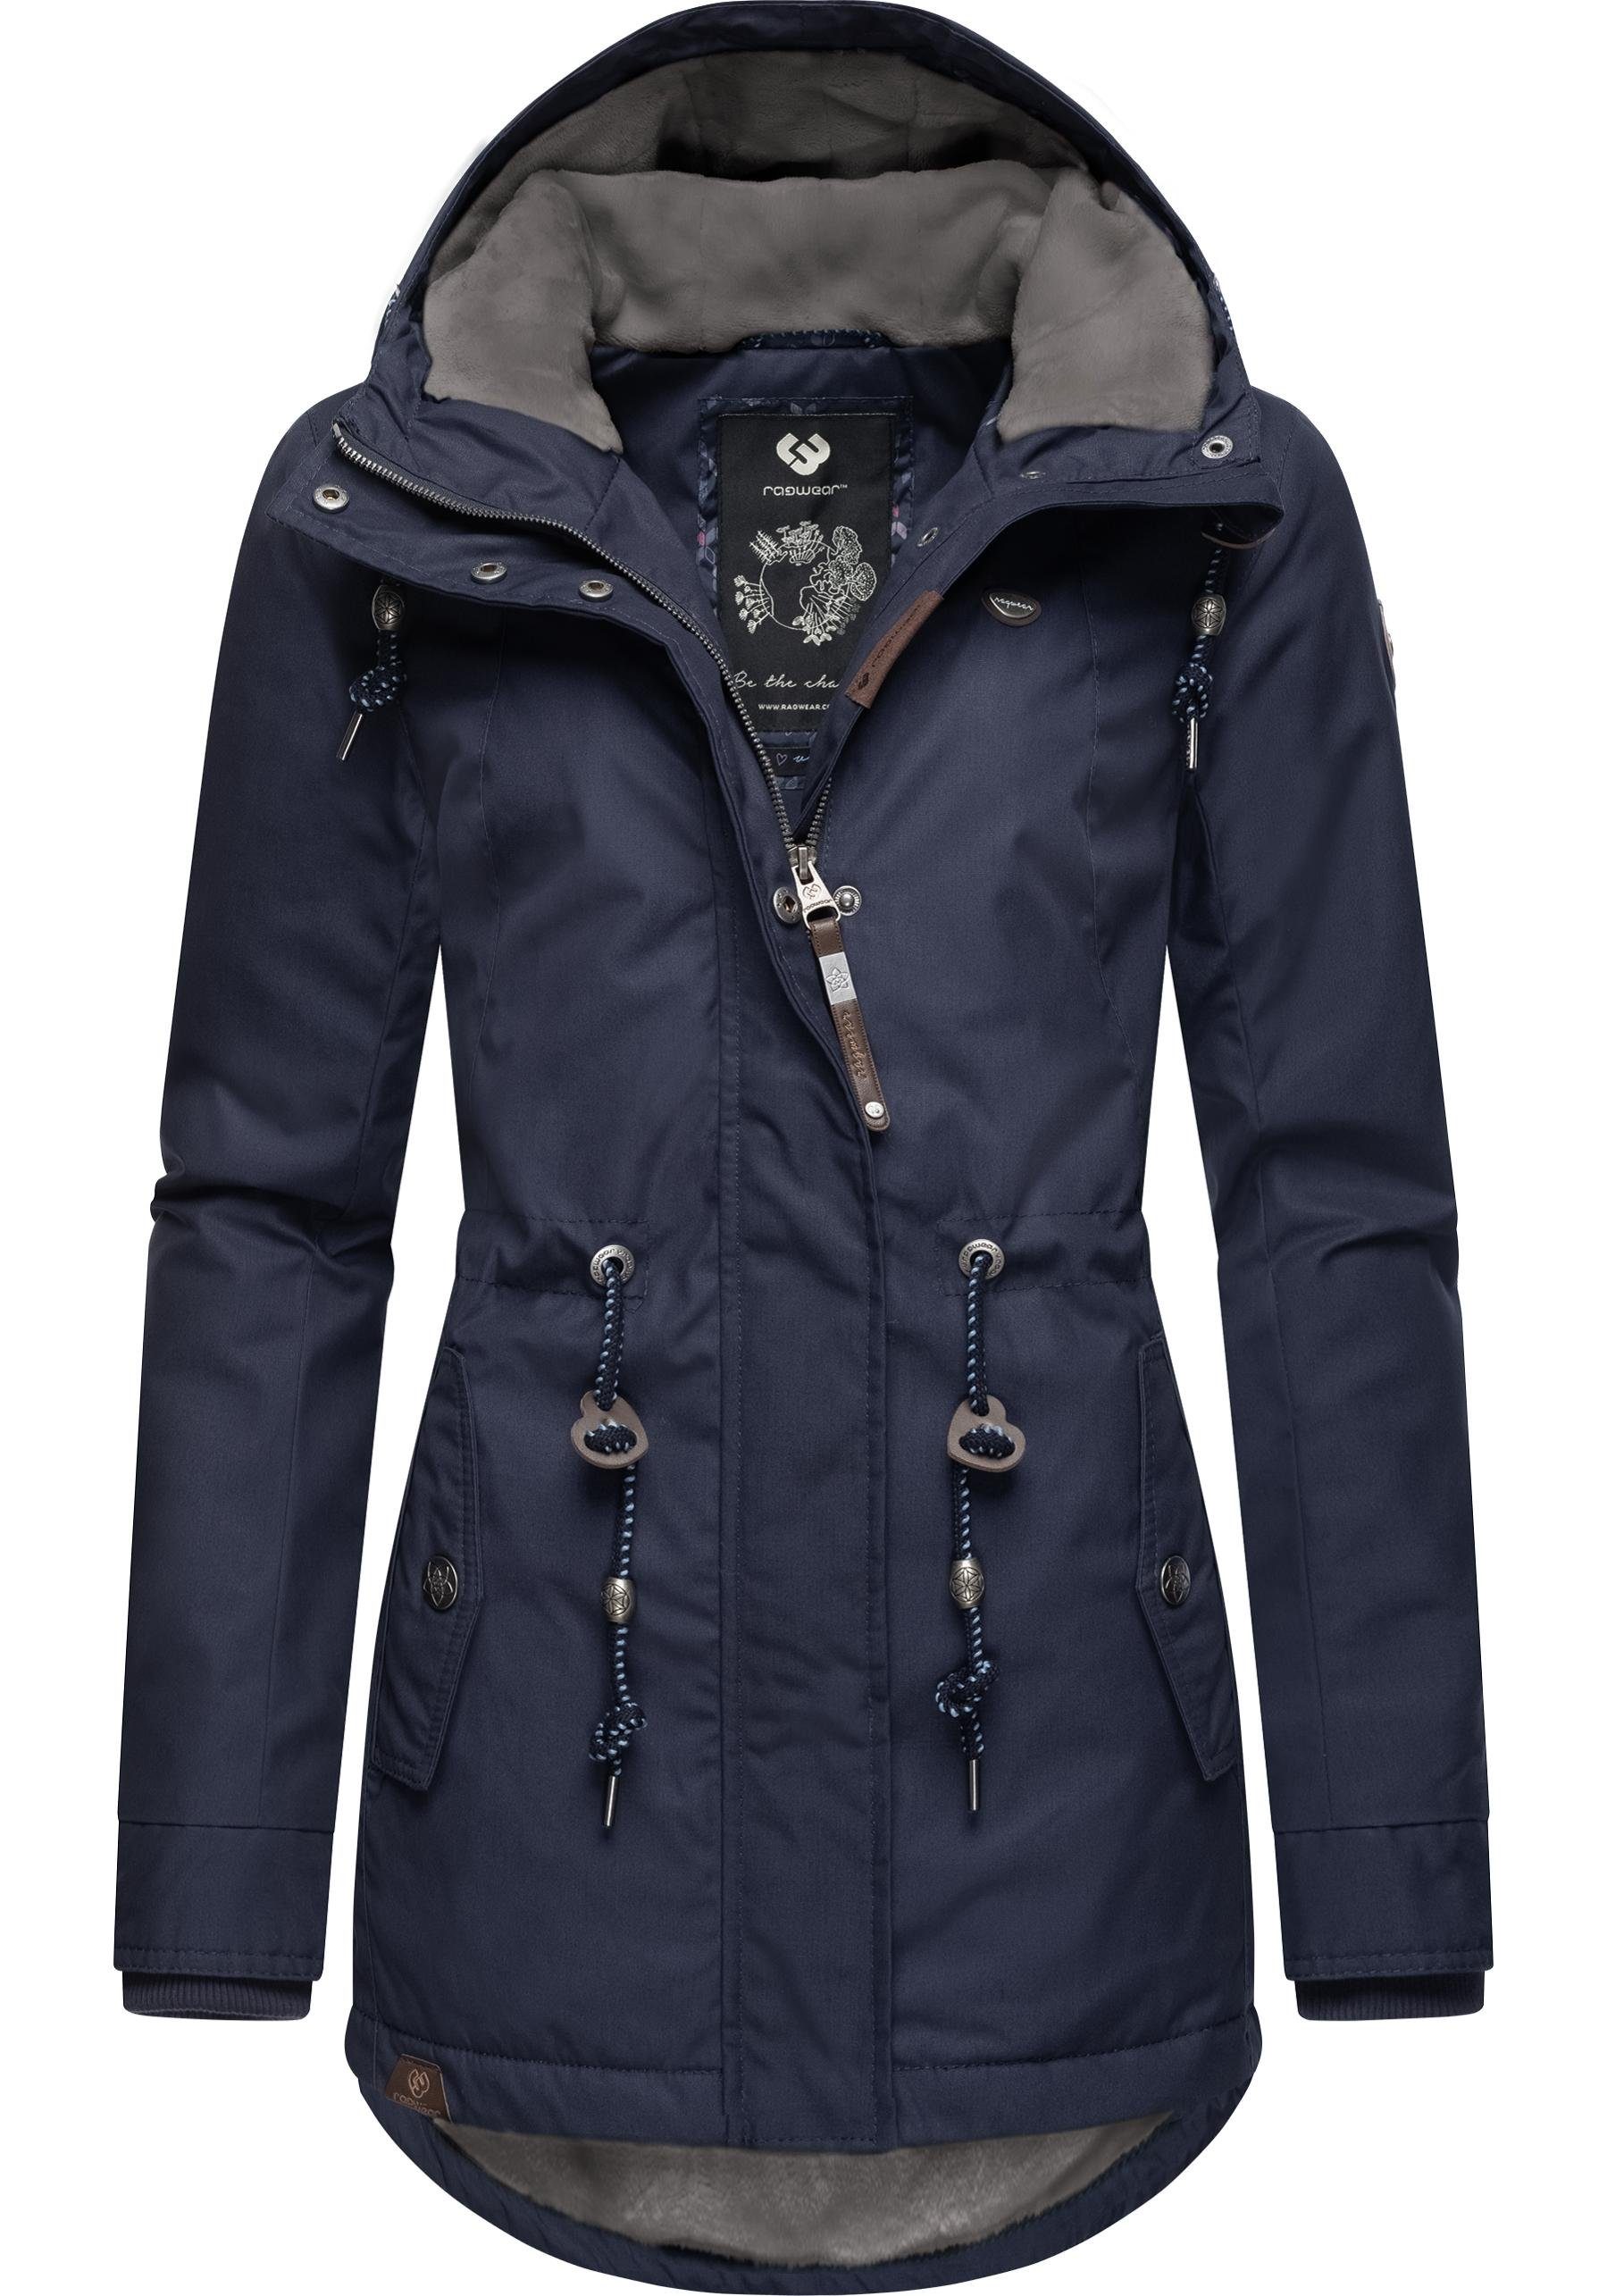 Ragwear Winterjacke Monadis Black Label stylischer Winterparka für die kalte Jahreszeit jeansblau